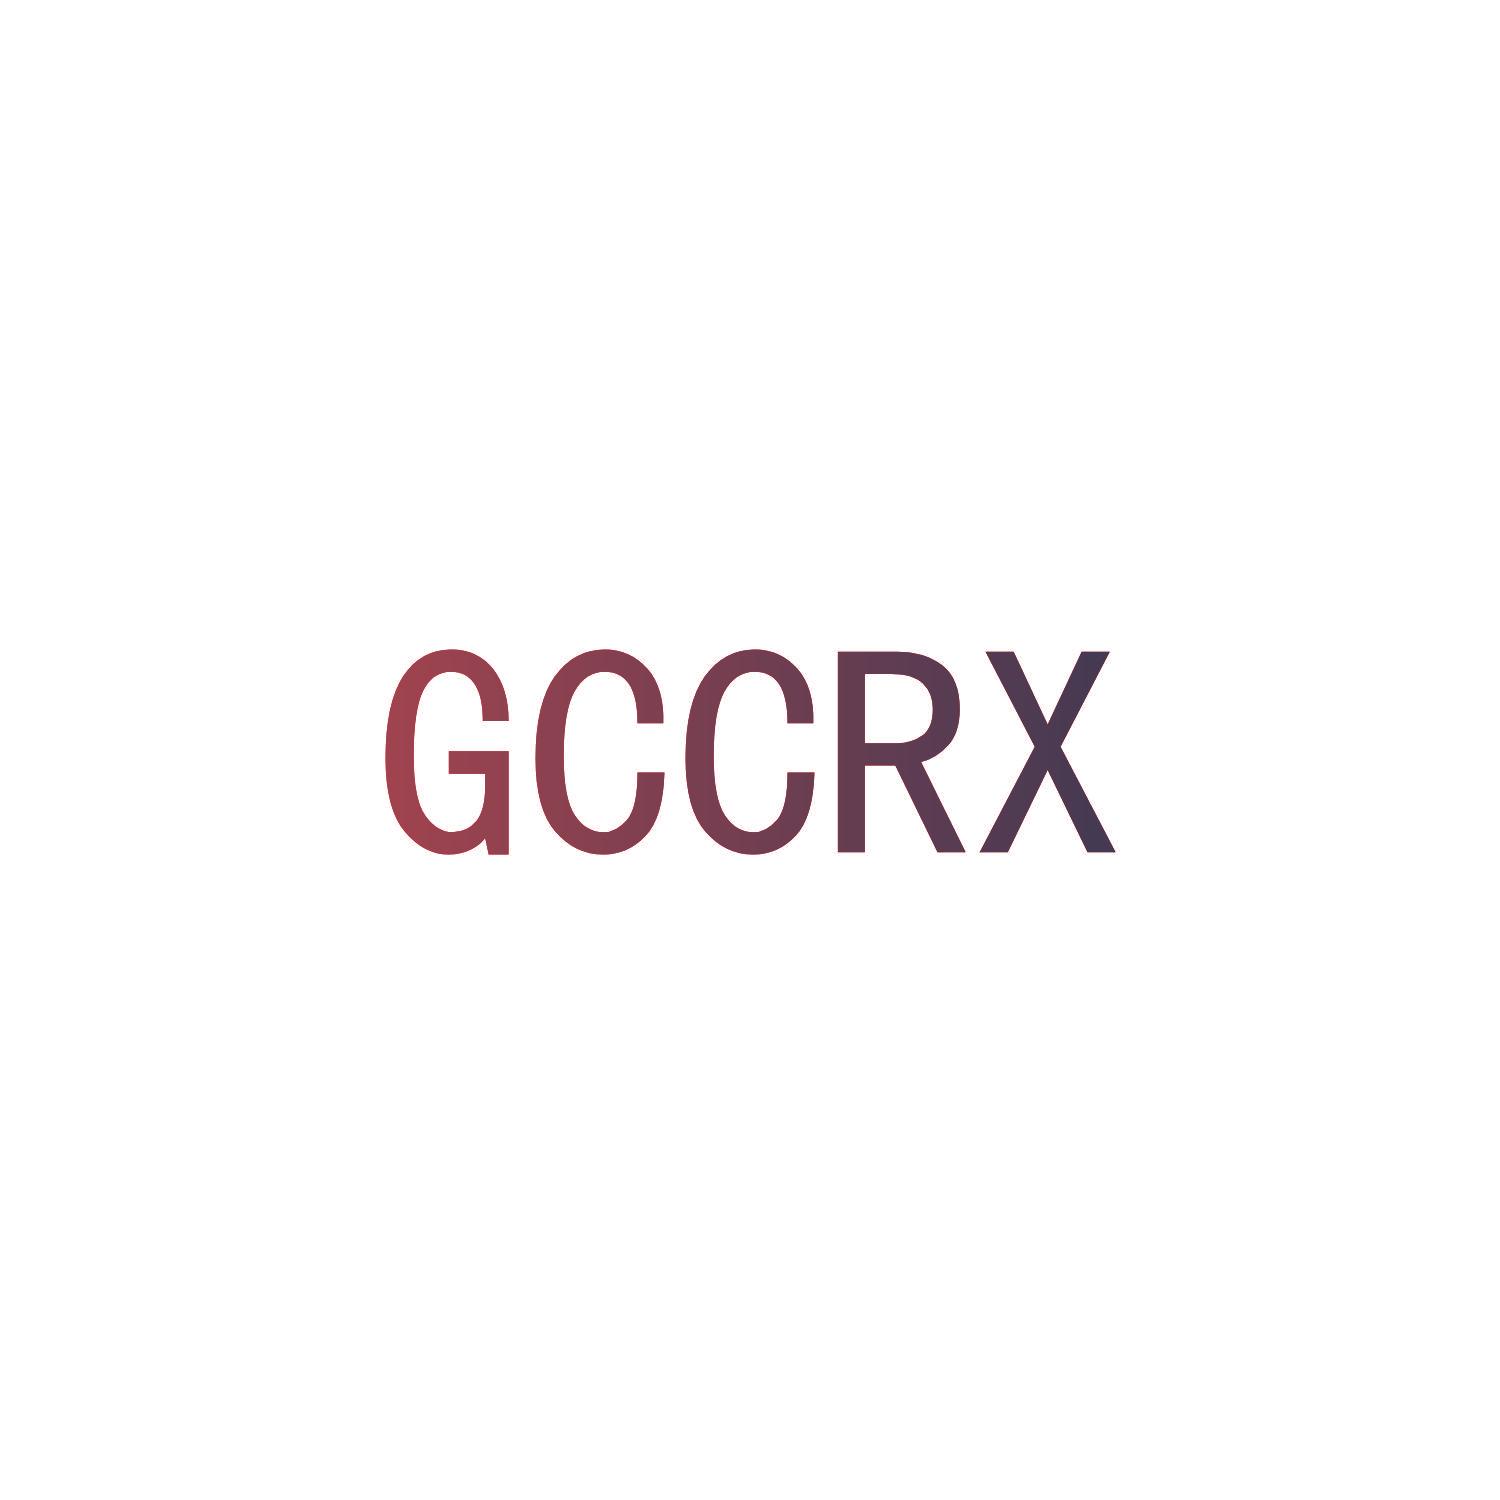 GCCRX